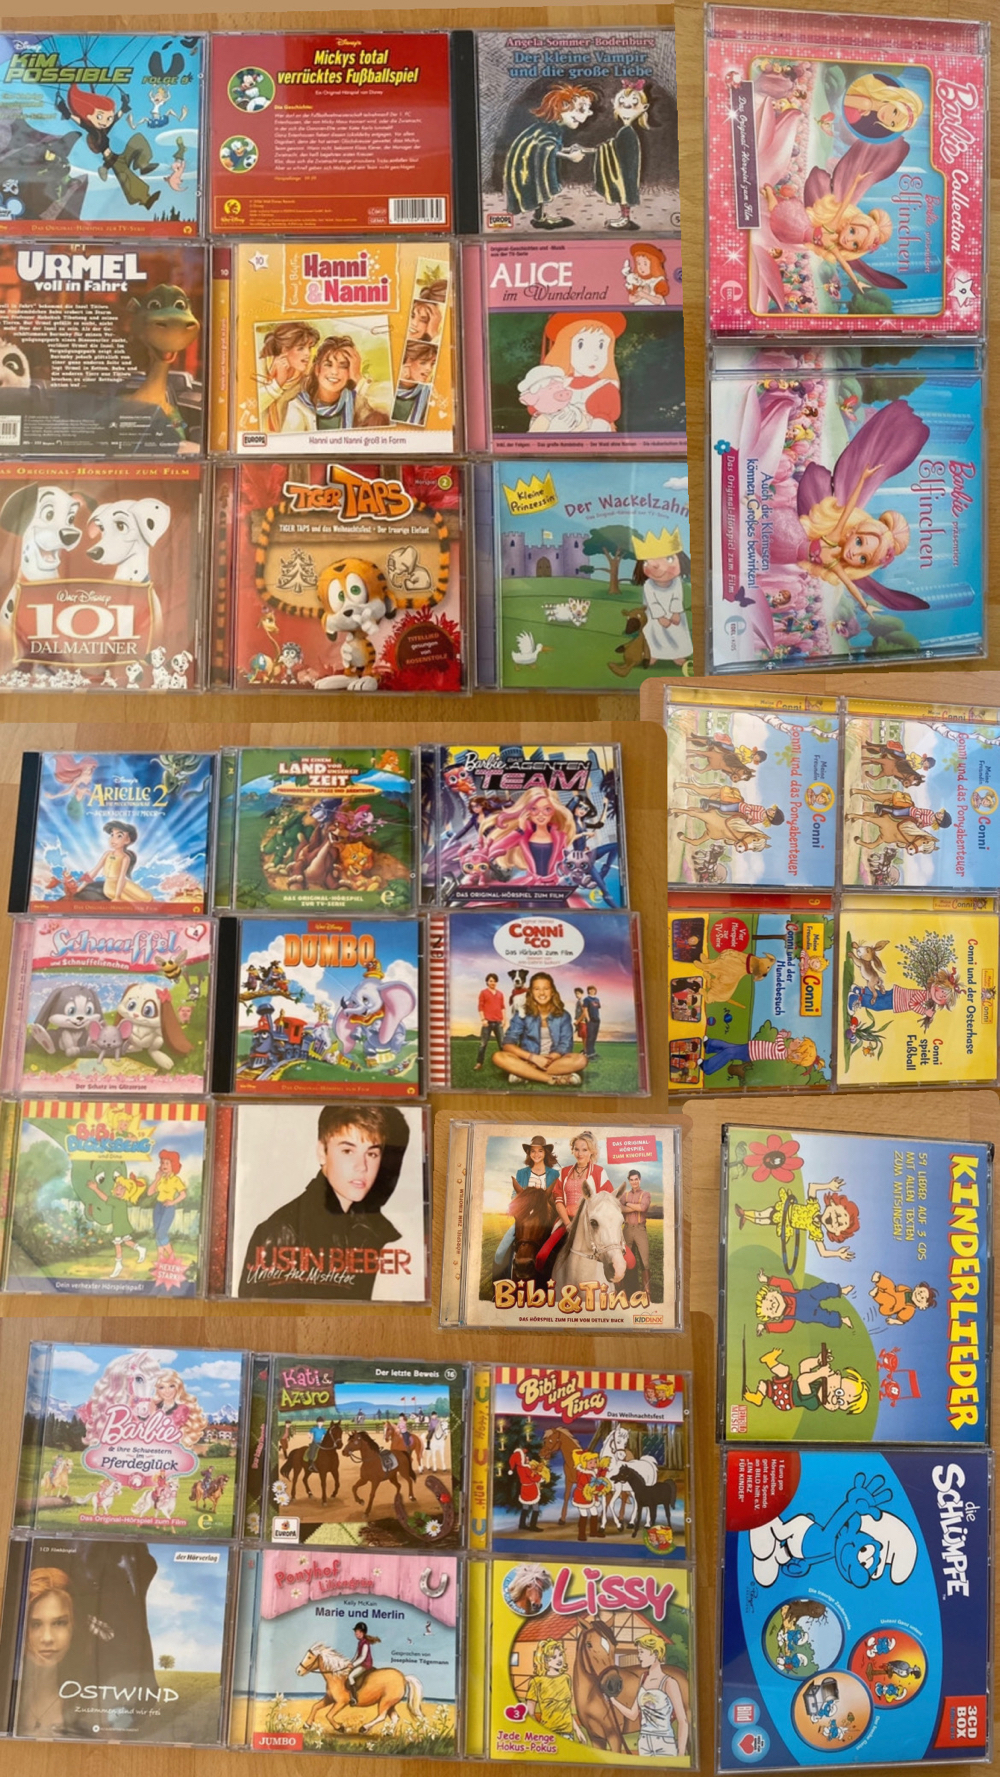 mehrere CDs Schlager Hits, Bibi & Tina, Die Schlümpfe, Alice im Wunderland, 101 Dalmatiner, Barbie